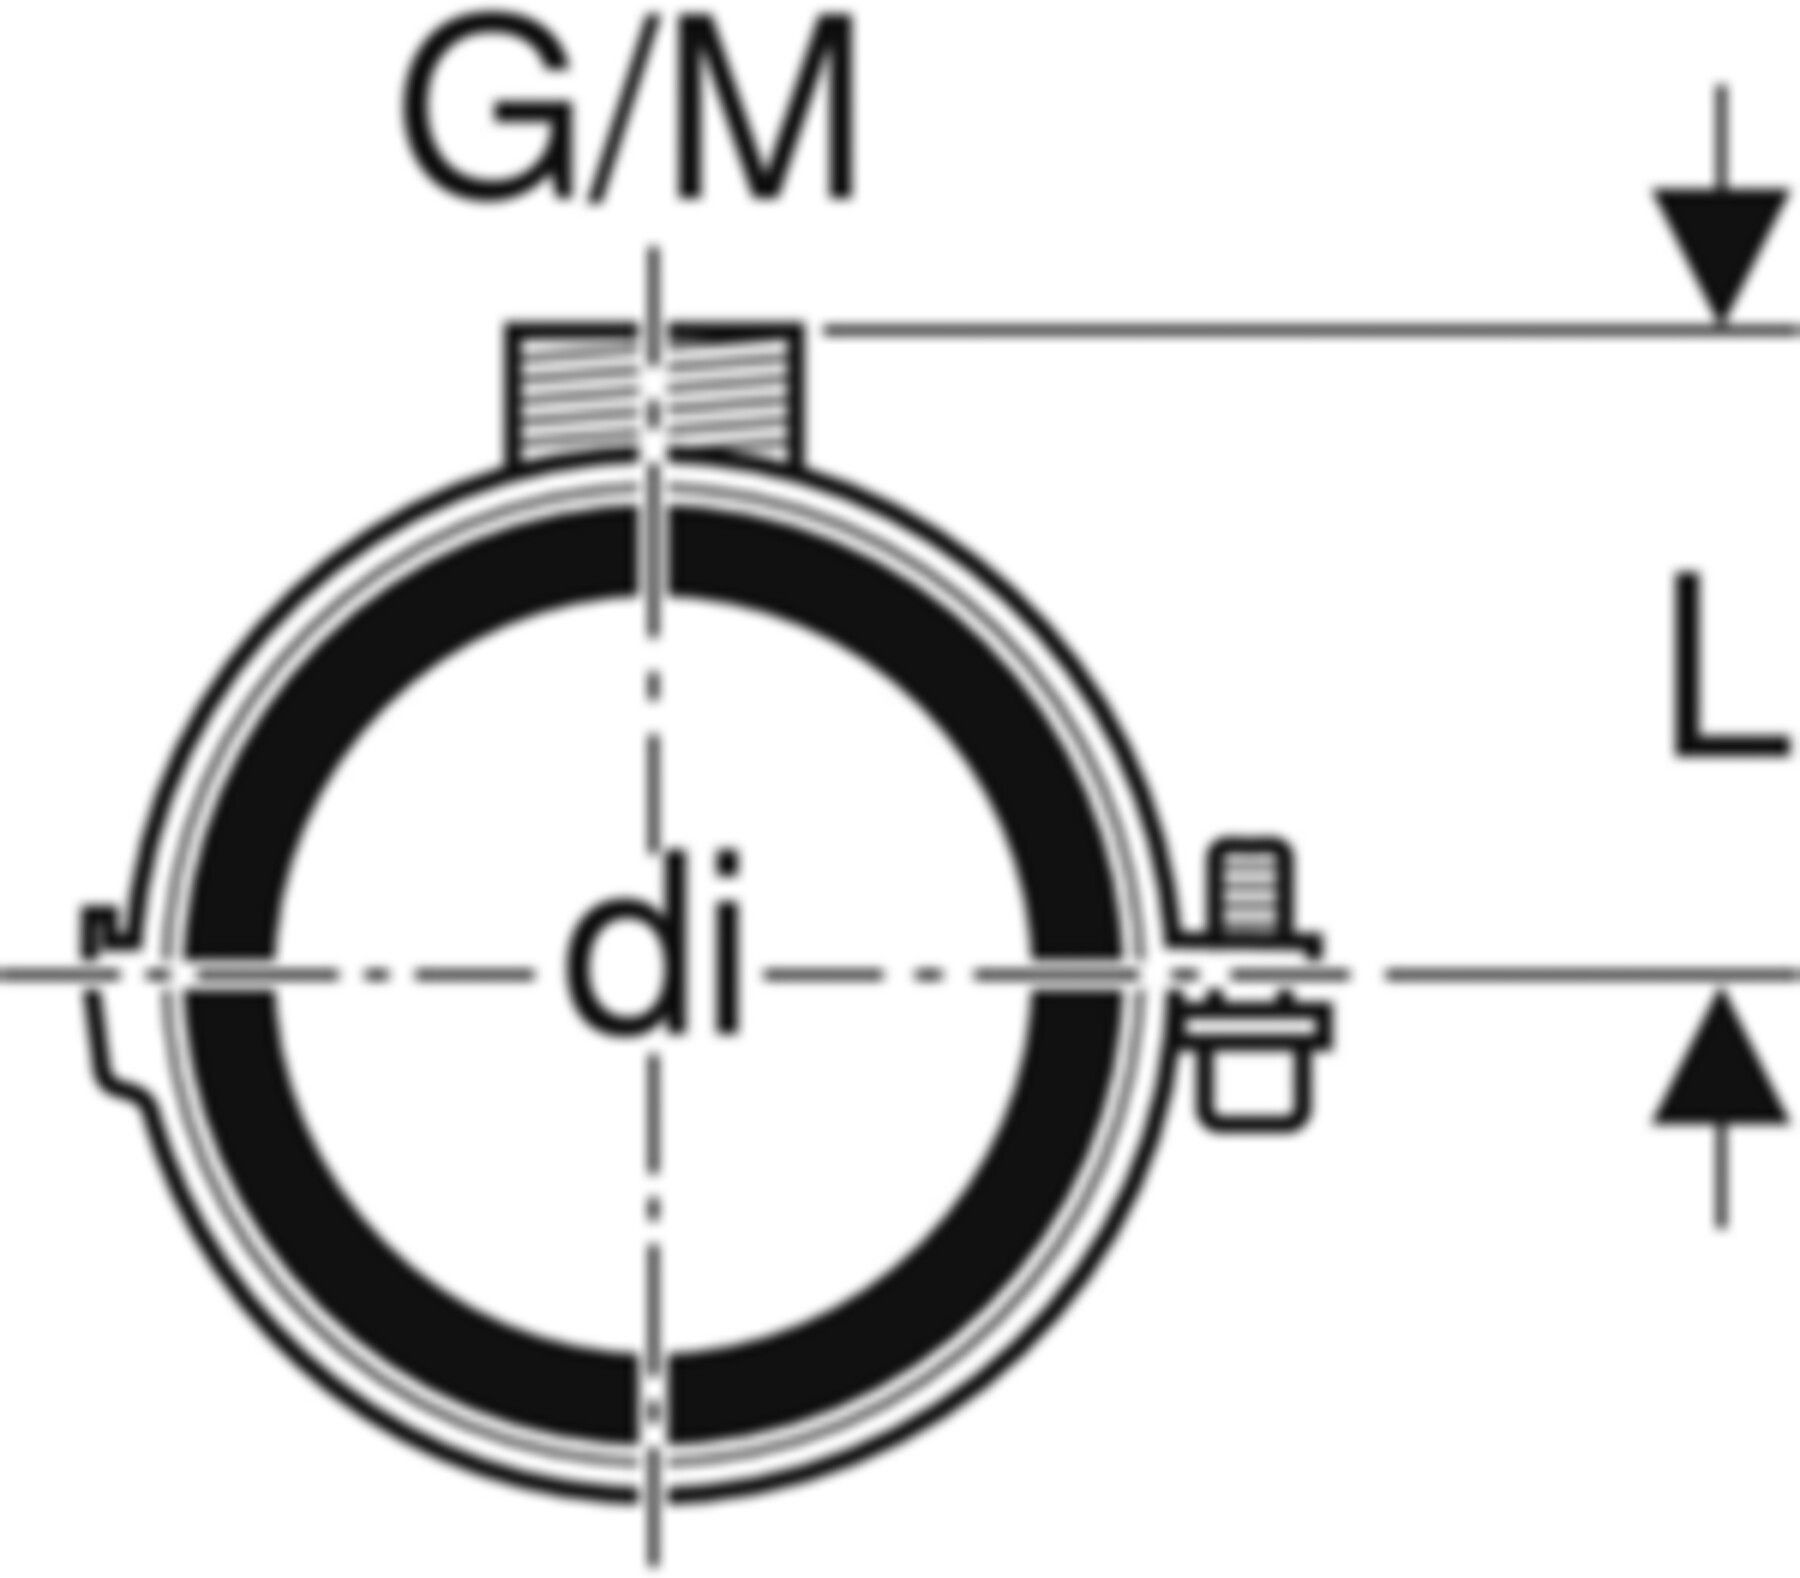 Rohrschelle mit Dämmeinlage d 63mm G/M 1/2"/M10 306.812.26.1 - Geberit-PE-Formstücke